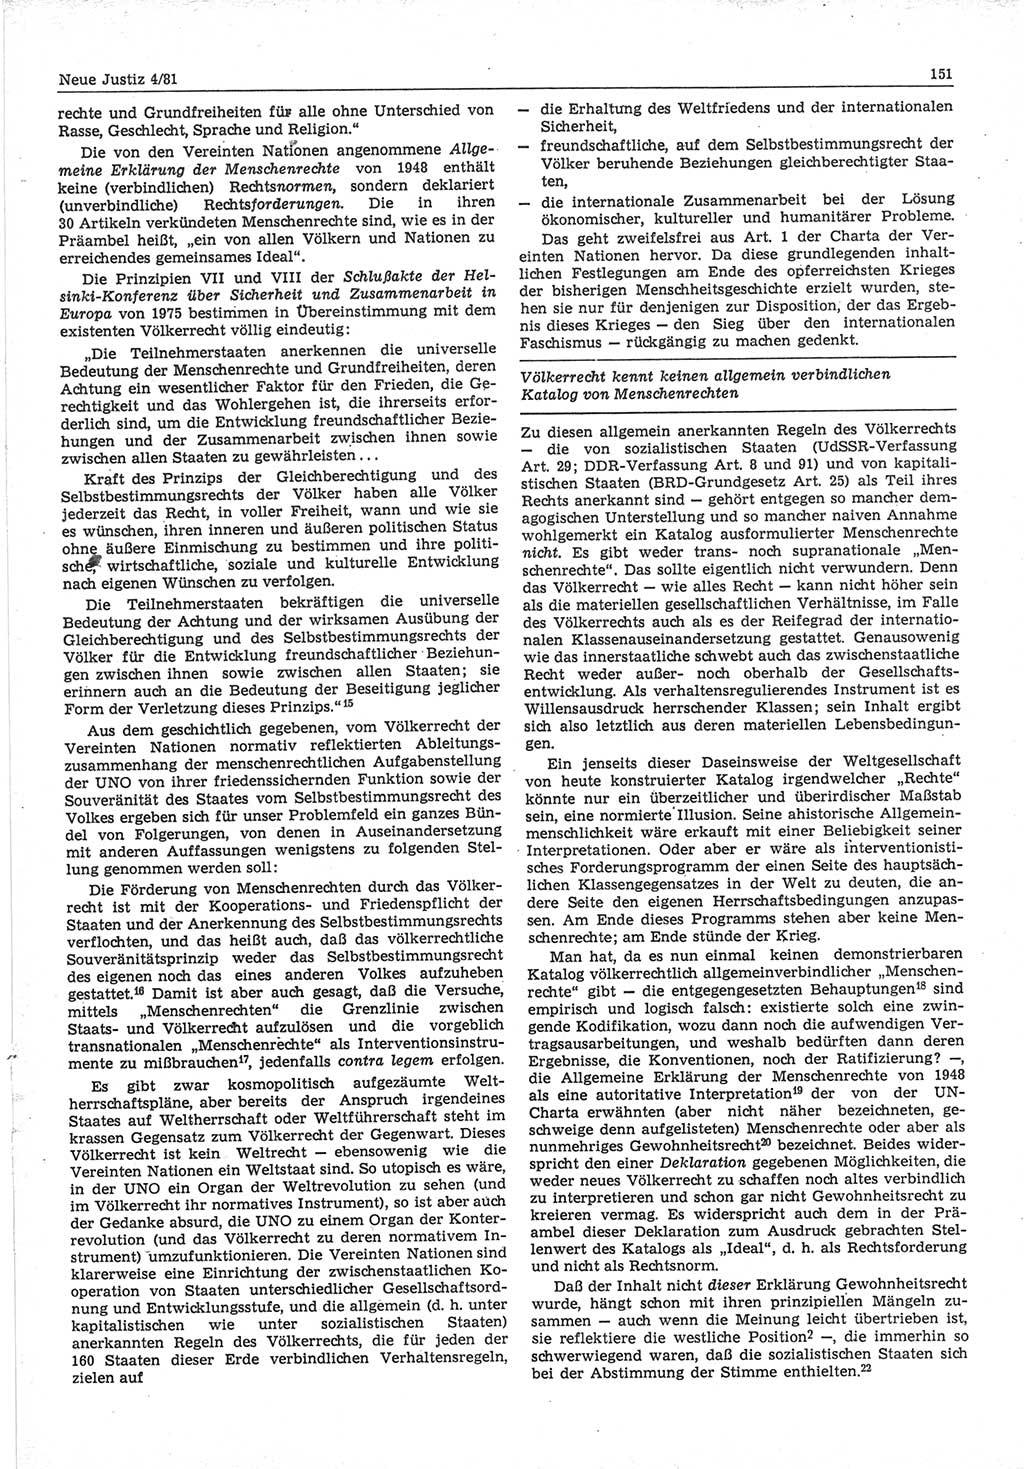 Neue Justiz (NJ), Zeitschrift für sozialistisches Recht und Gesetzlichkeit [Deutsche Demokratische Republik (DDR)], 35. Jahrgang 1981, Seite 151 (NJ DDR 1981, S. 151)